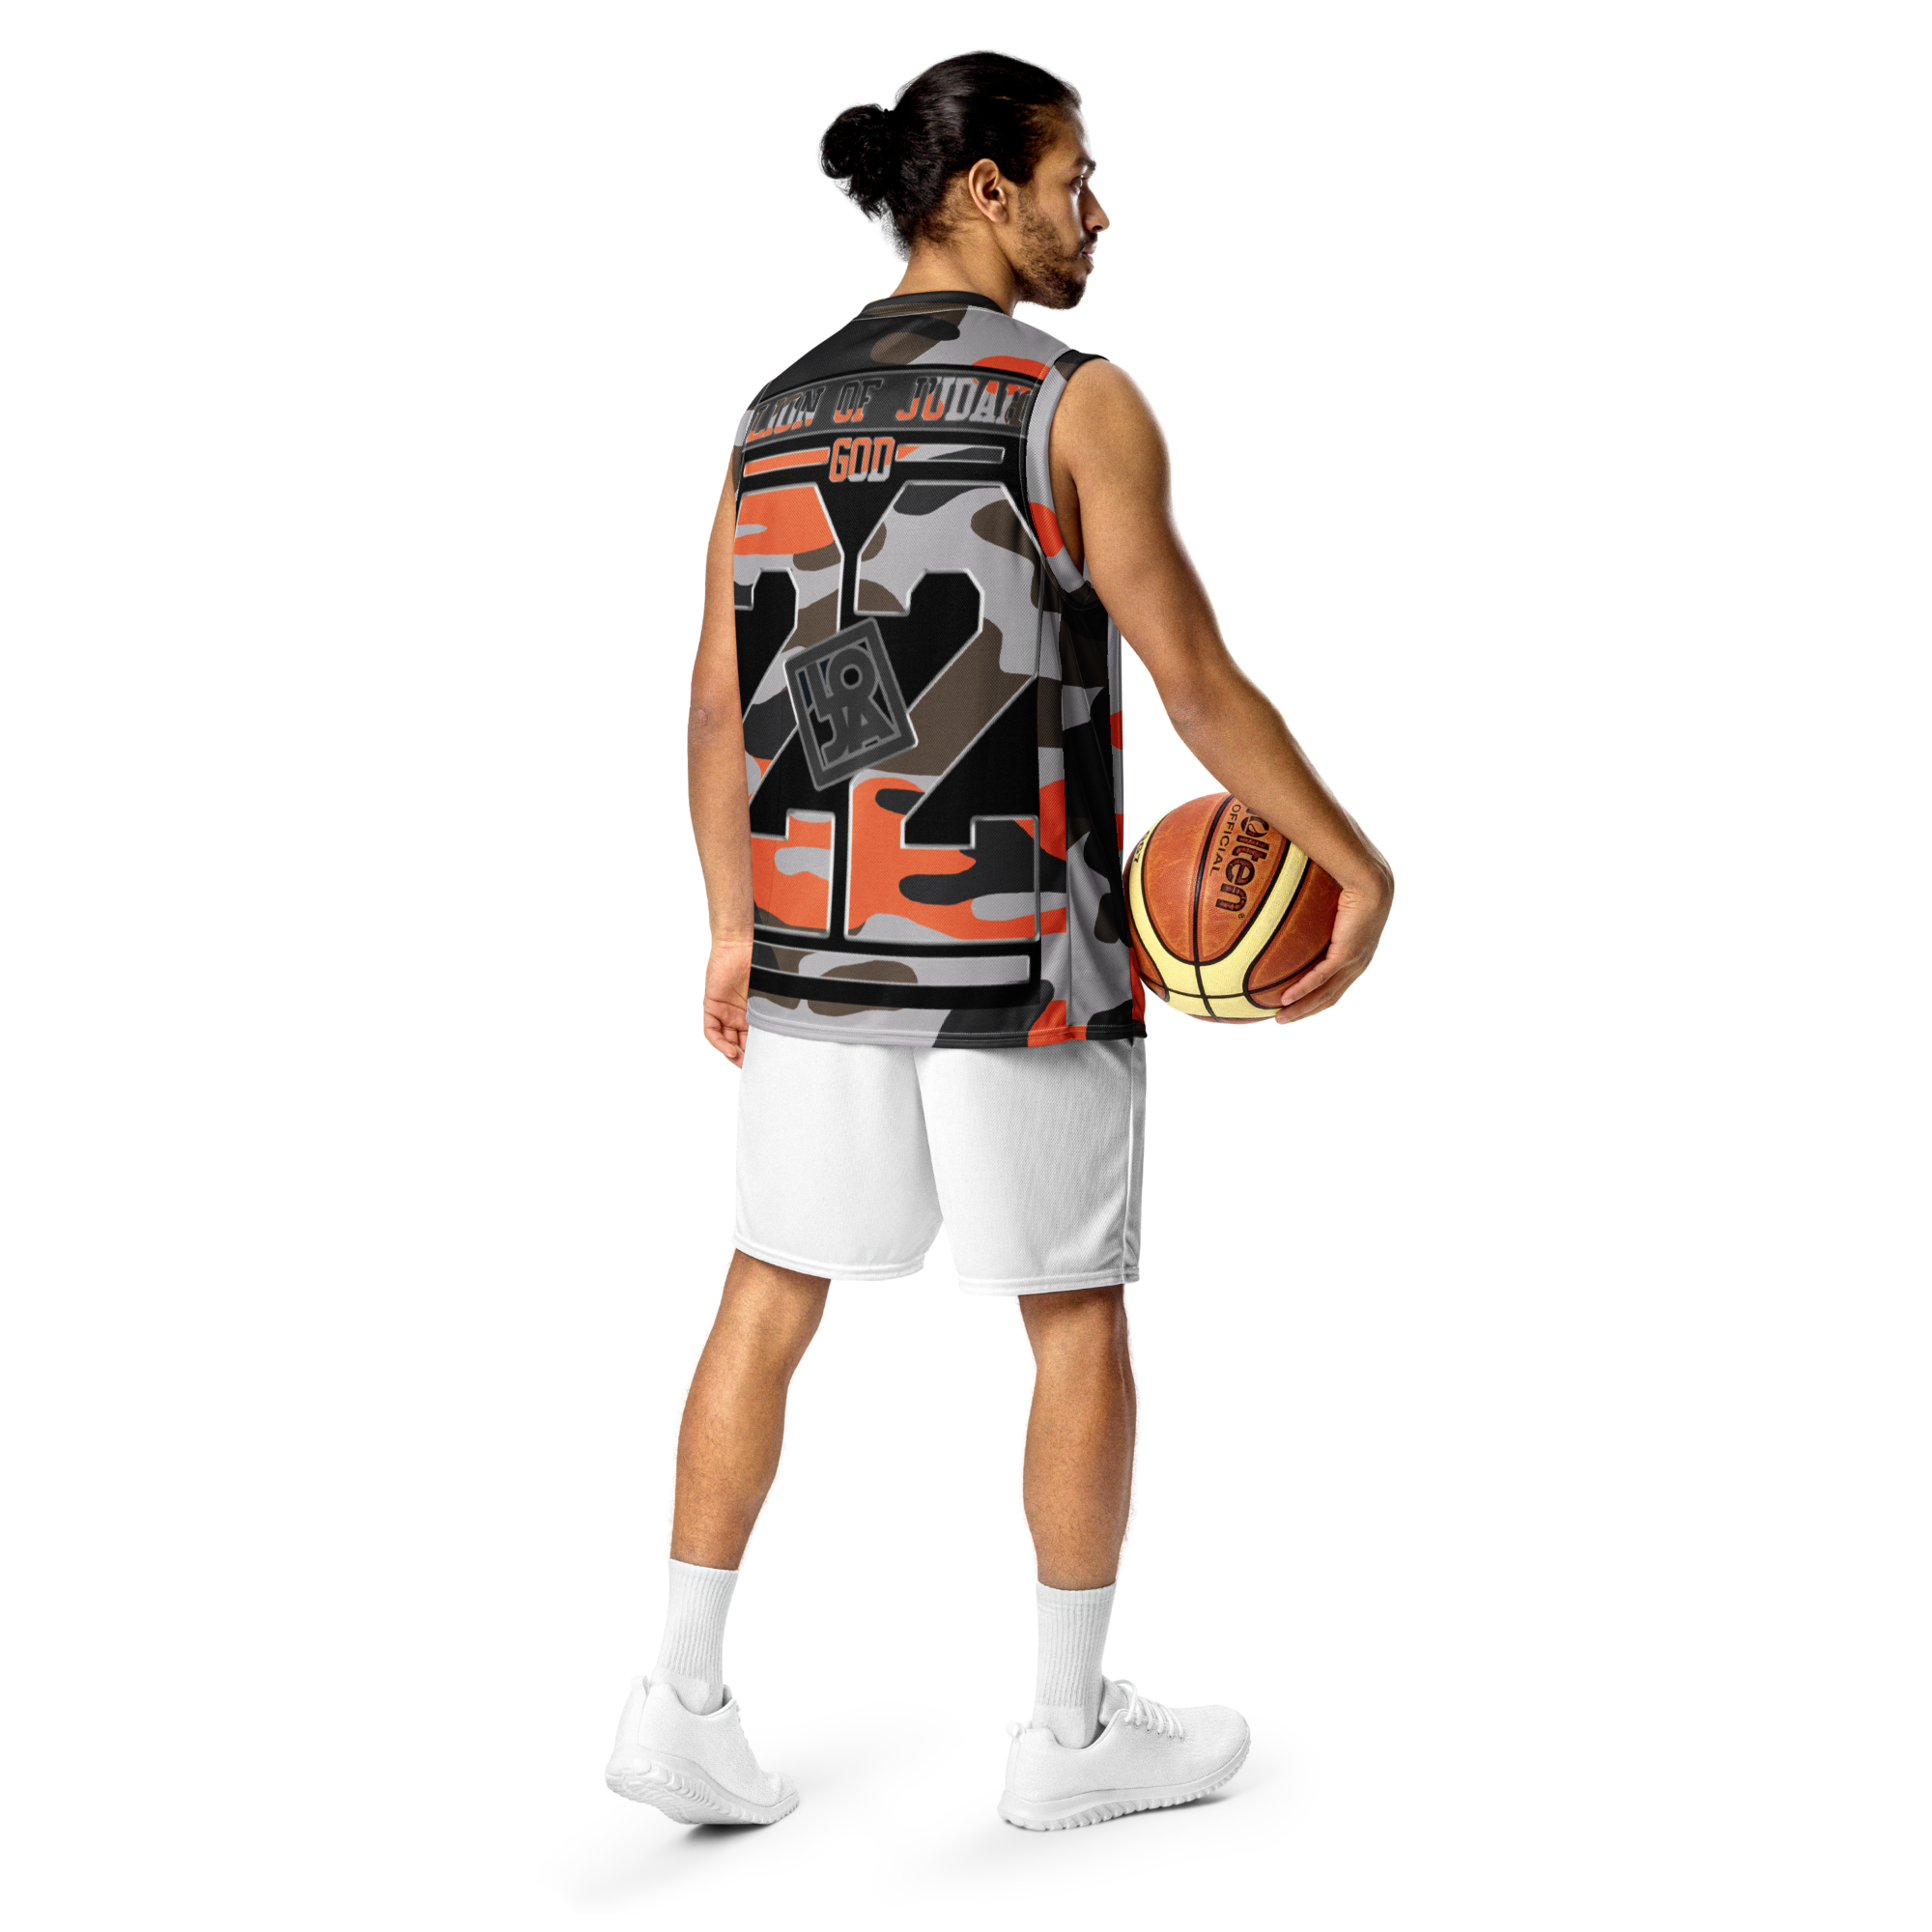 Lion Of Judah God Design Recycled unisex Orange Black & Brown Camouflage Design basketball jersey